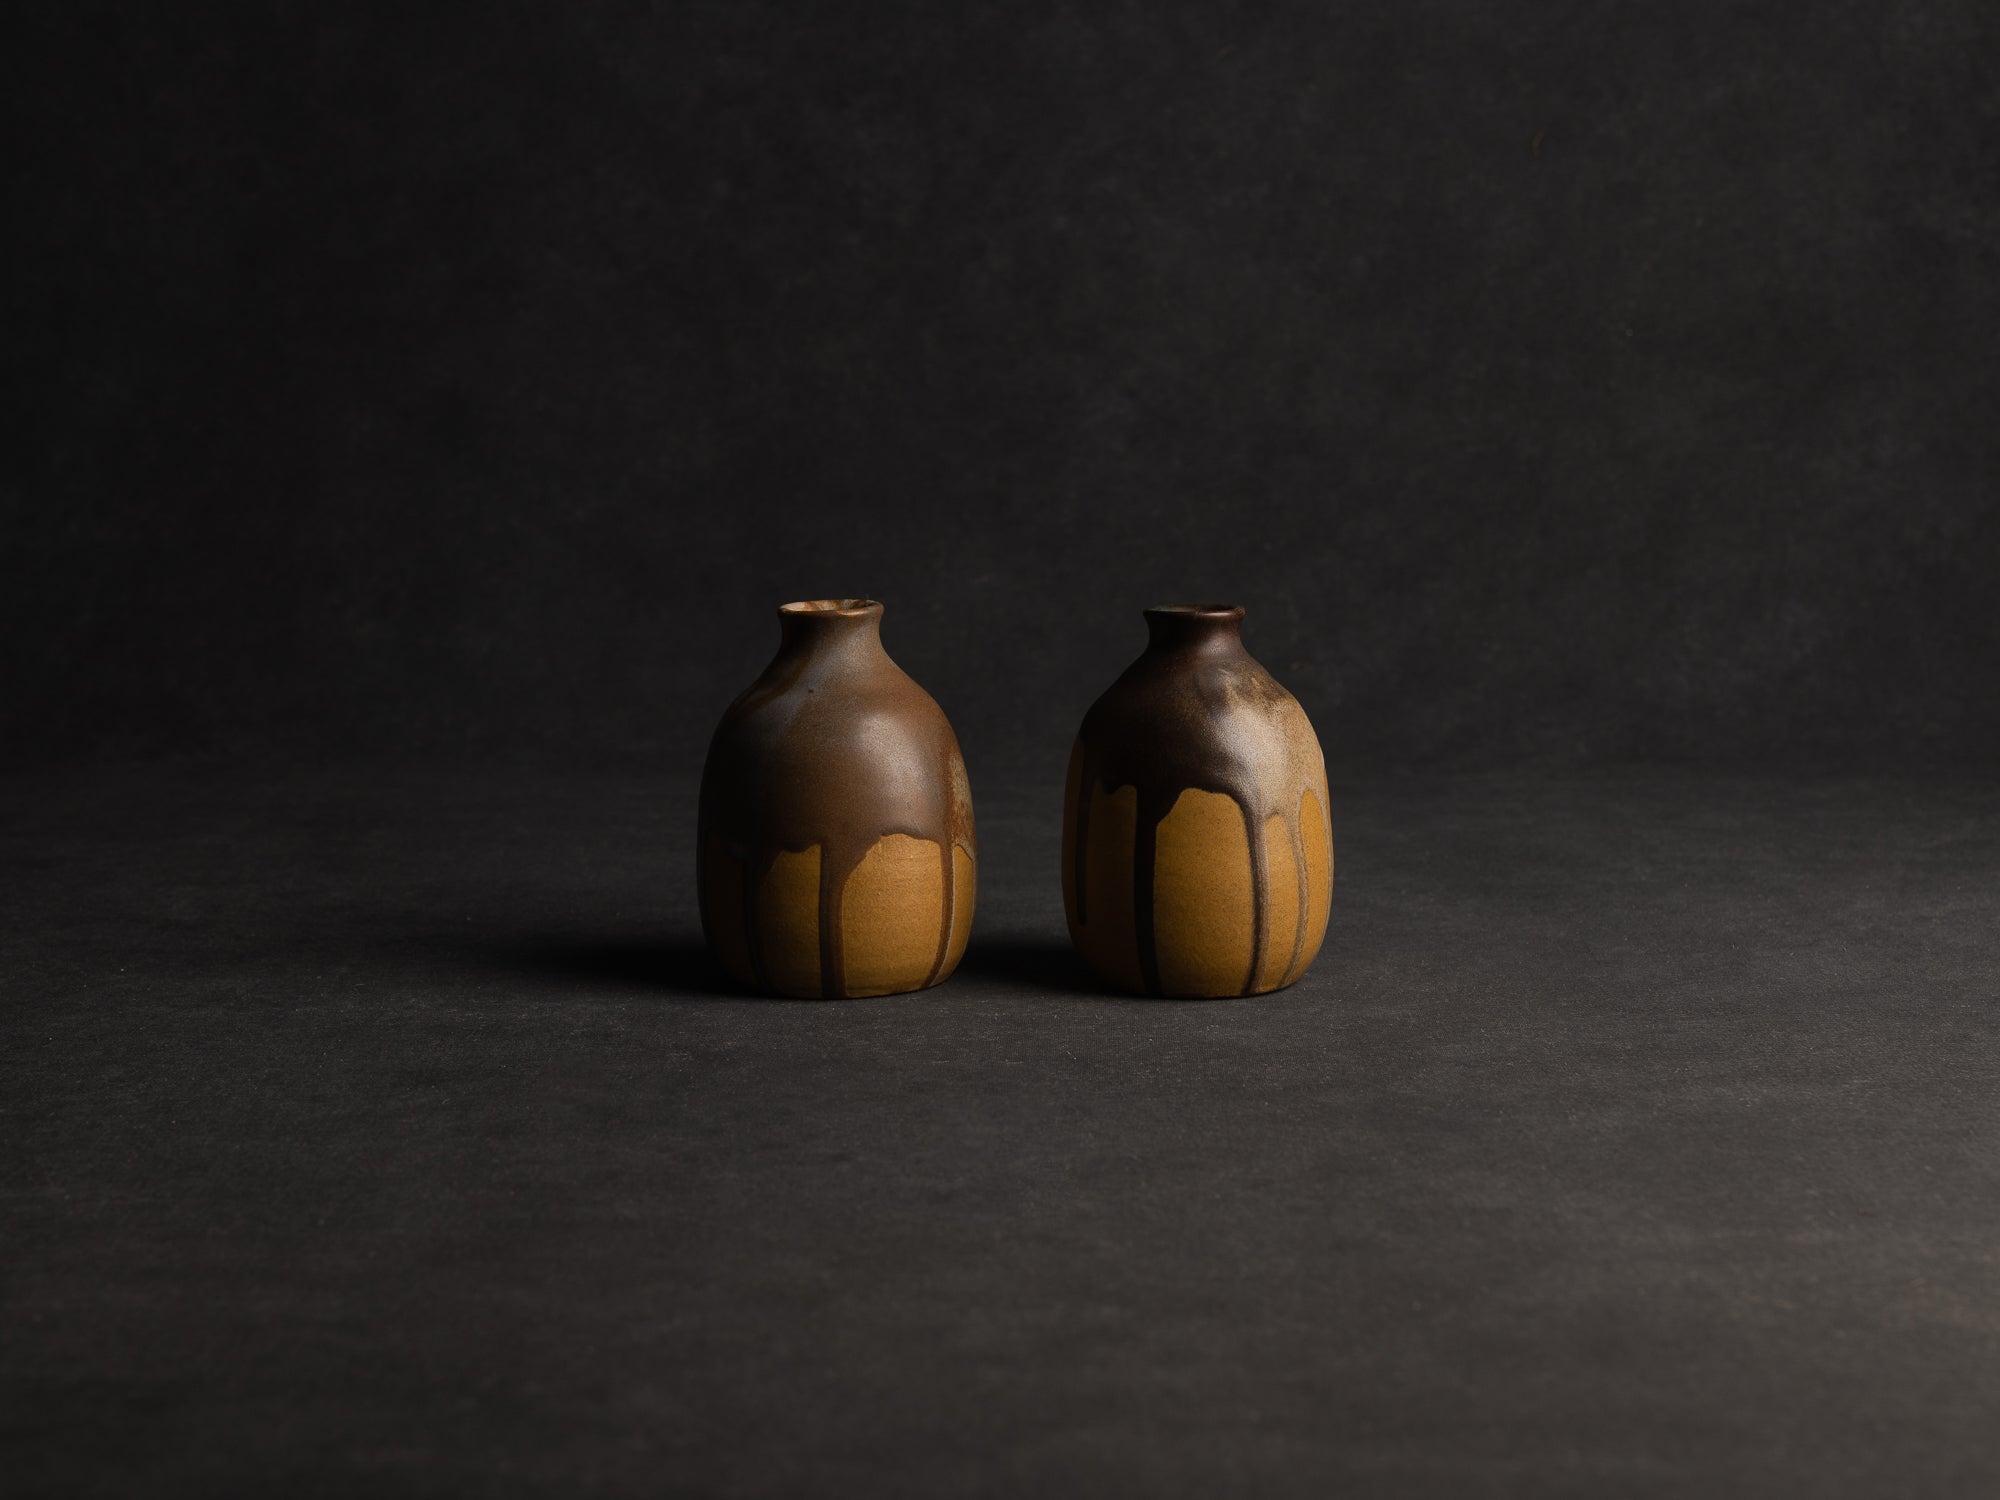 Duo de vases, petites bouteilles en grès japonisant de Léon Pointu, Atelier Pointu, France (vers 1910-25)..School of Carriès, japonisme tokkuri-shape stoneware bottle vases duet by Léon Pointu, Atelier Pointu, France (circa 1910-25)